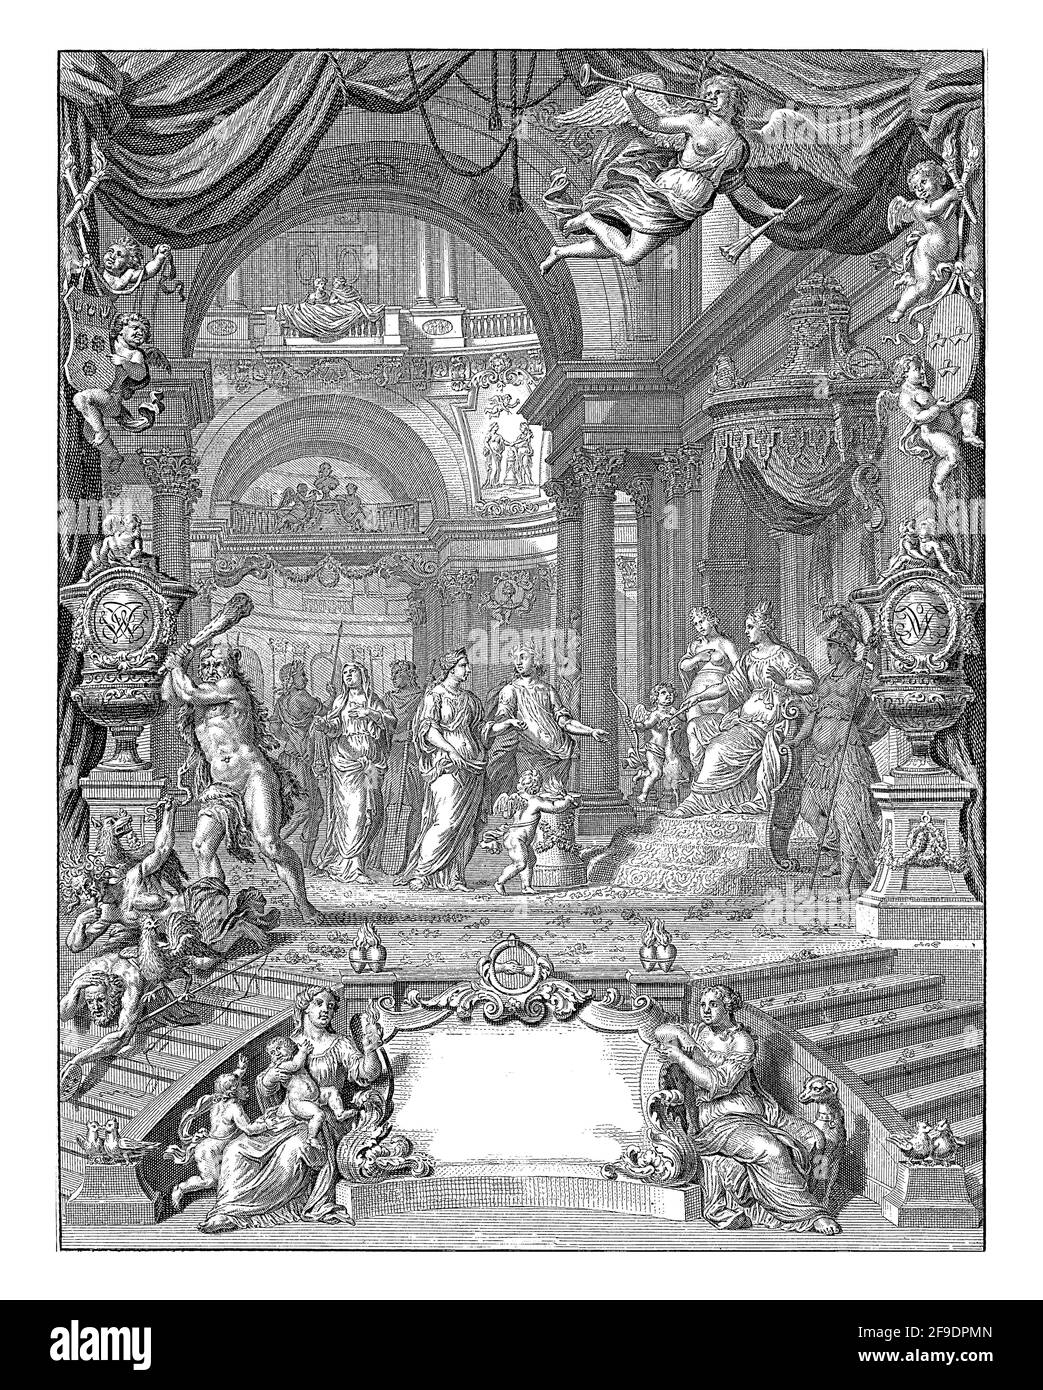 Das Ehepaar steht vor einer Landung mit Venus, Amor, Juno und Minerva. Herkules jagt die wütenden Gäste weg. Stockfoto